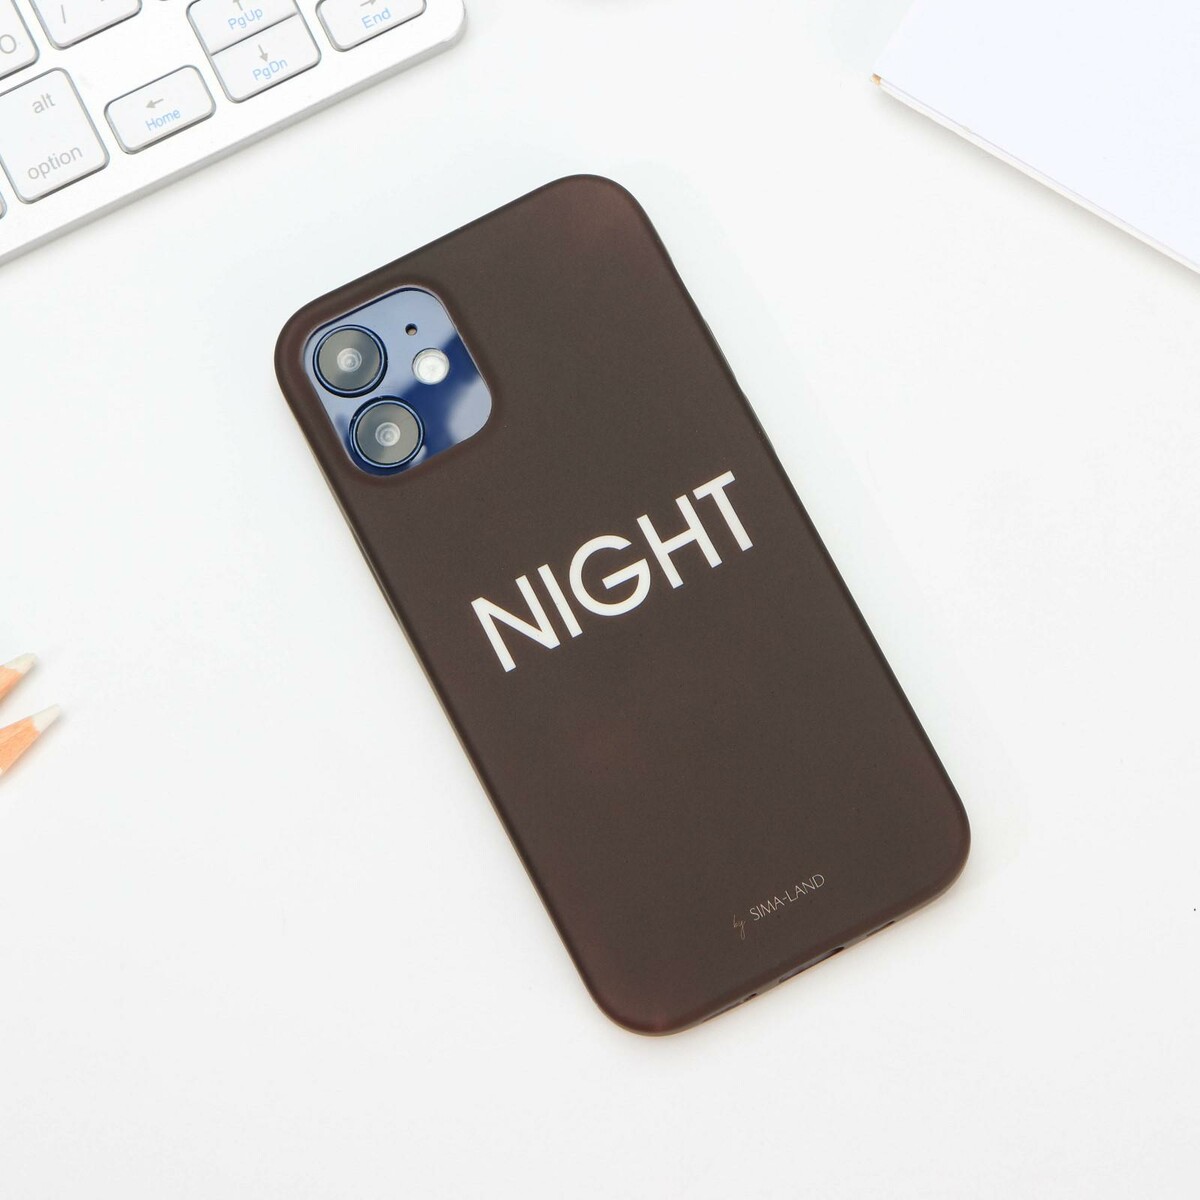   iphone 12 mini night